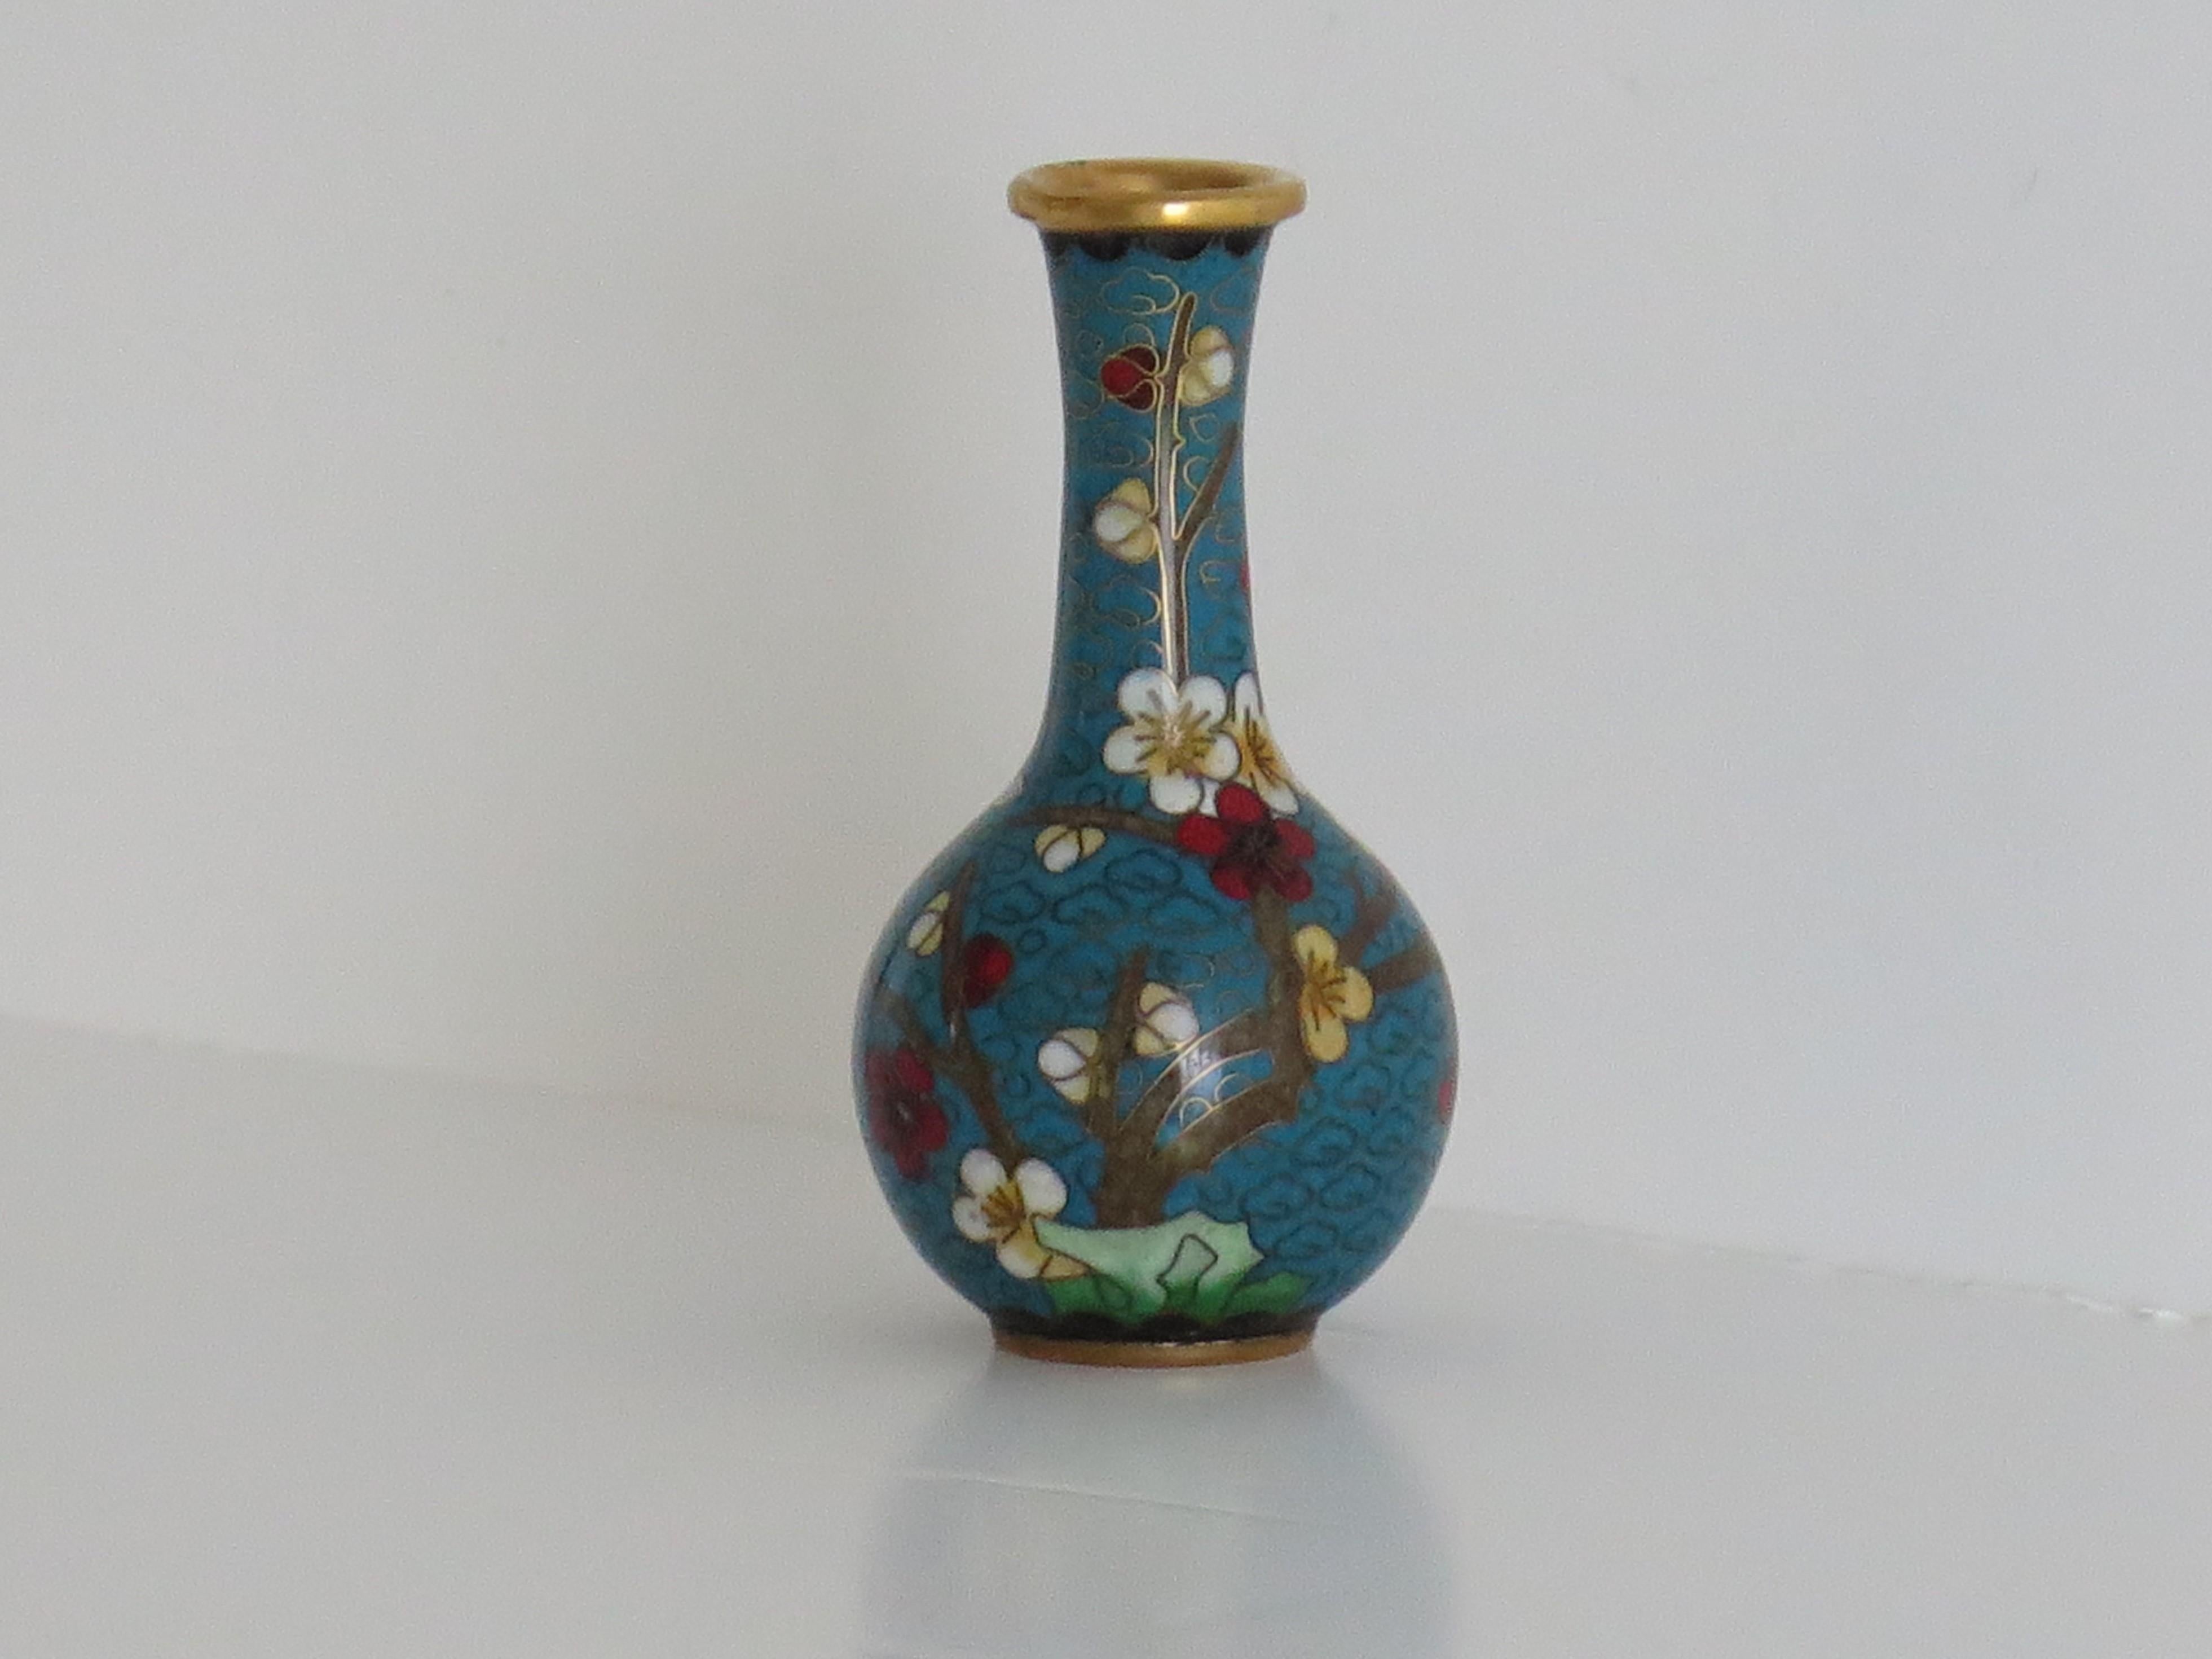 Dies ist eine sehr dekorative kleine Cloisonné-Vase, die in China hergestellt wurde und aus dem ersten Viertel des 20. 

Die Vase hat eine gute kugelförmige Balusterform. Sie wurde aus einer Bronzelegierung mit reichhaltigen Emaillen in vielen